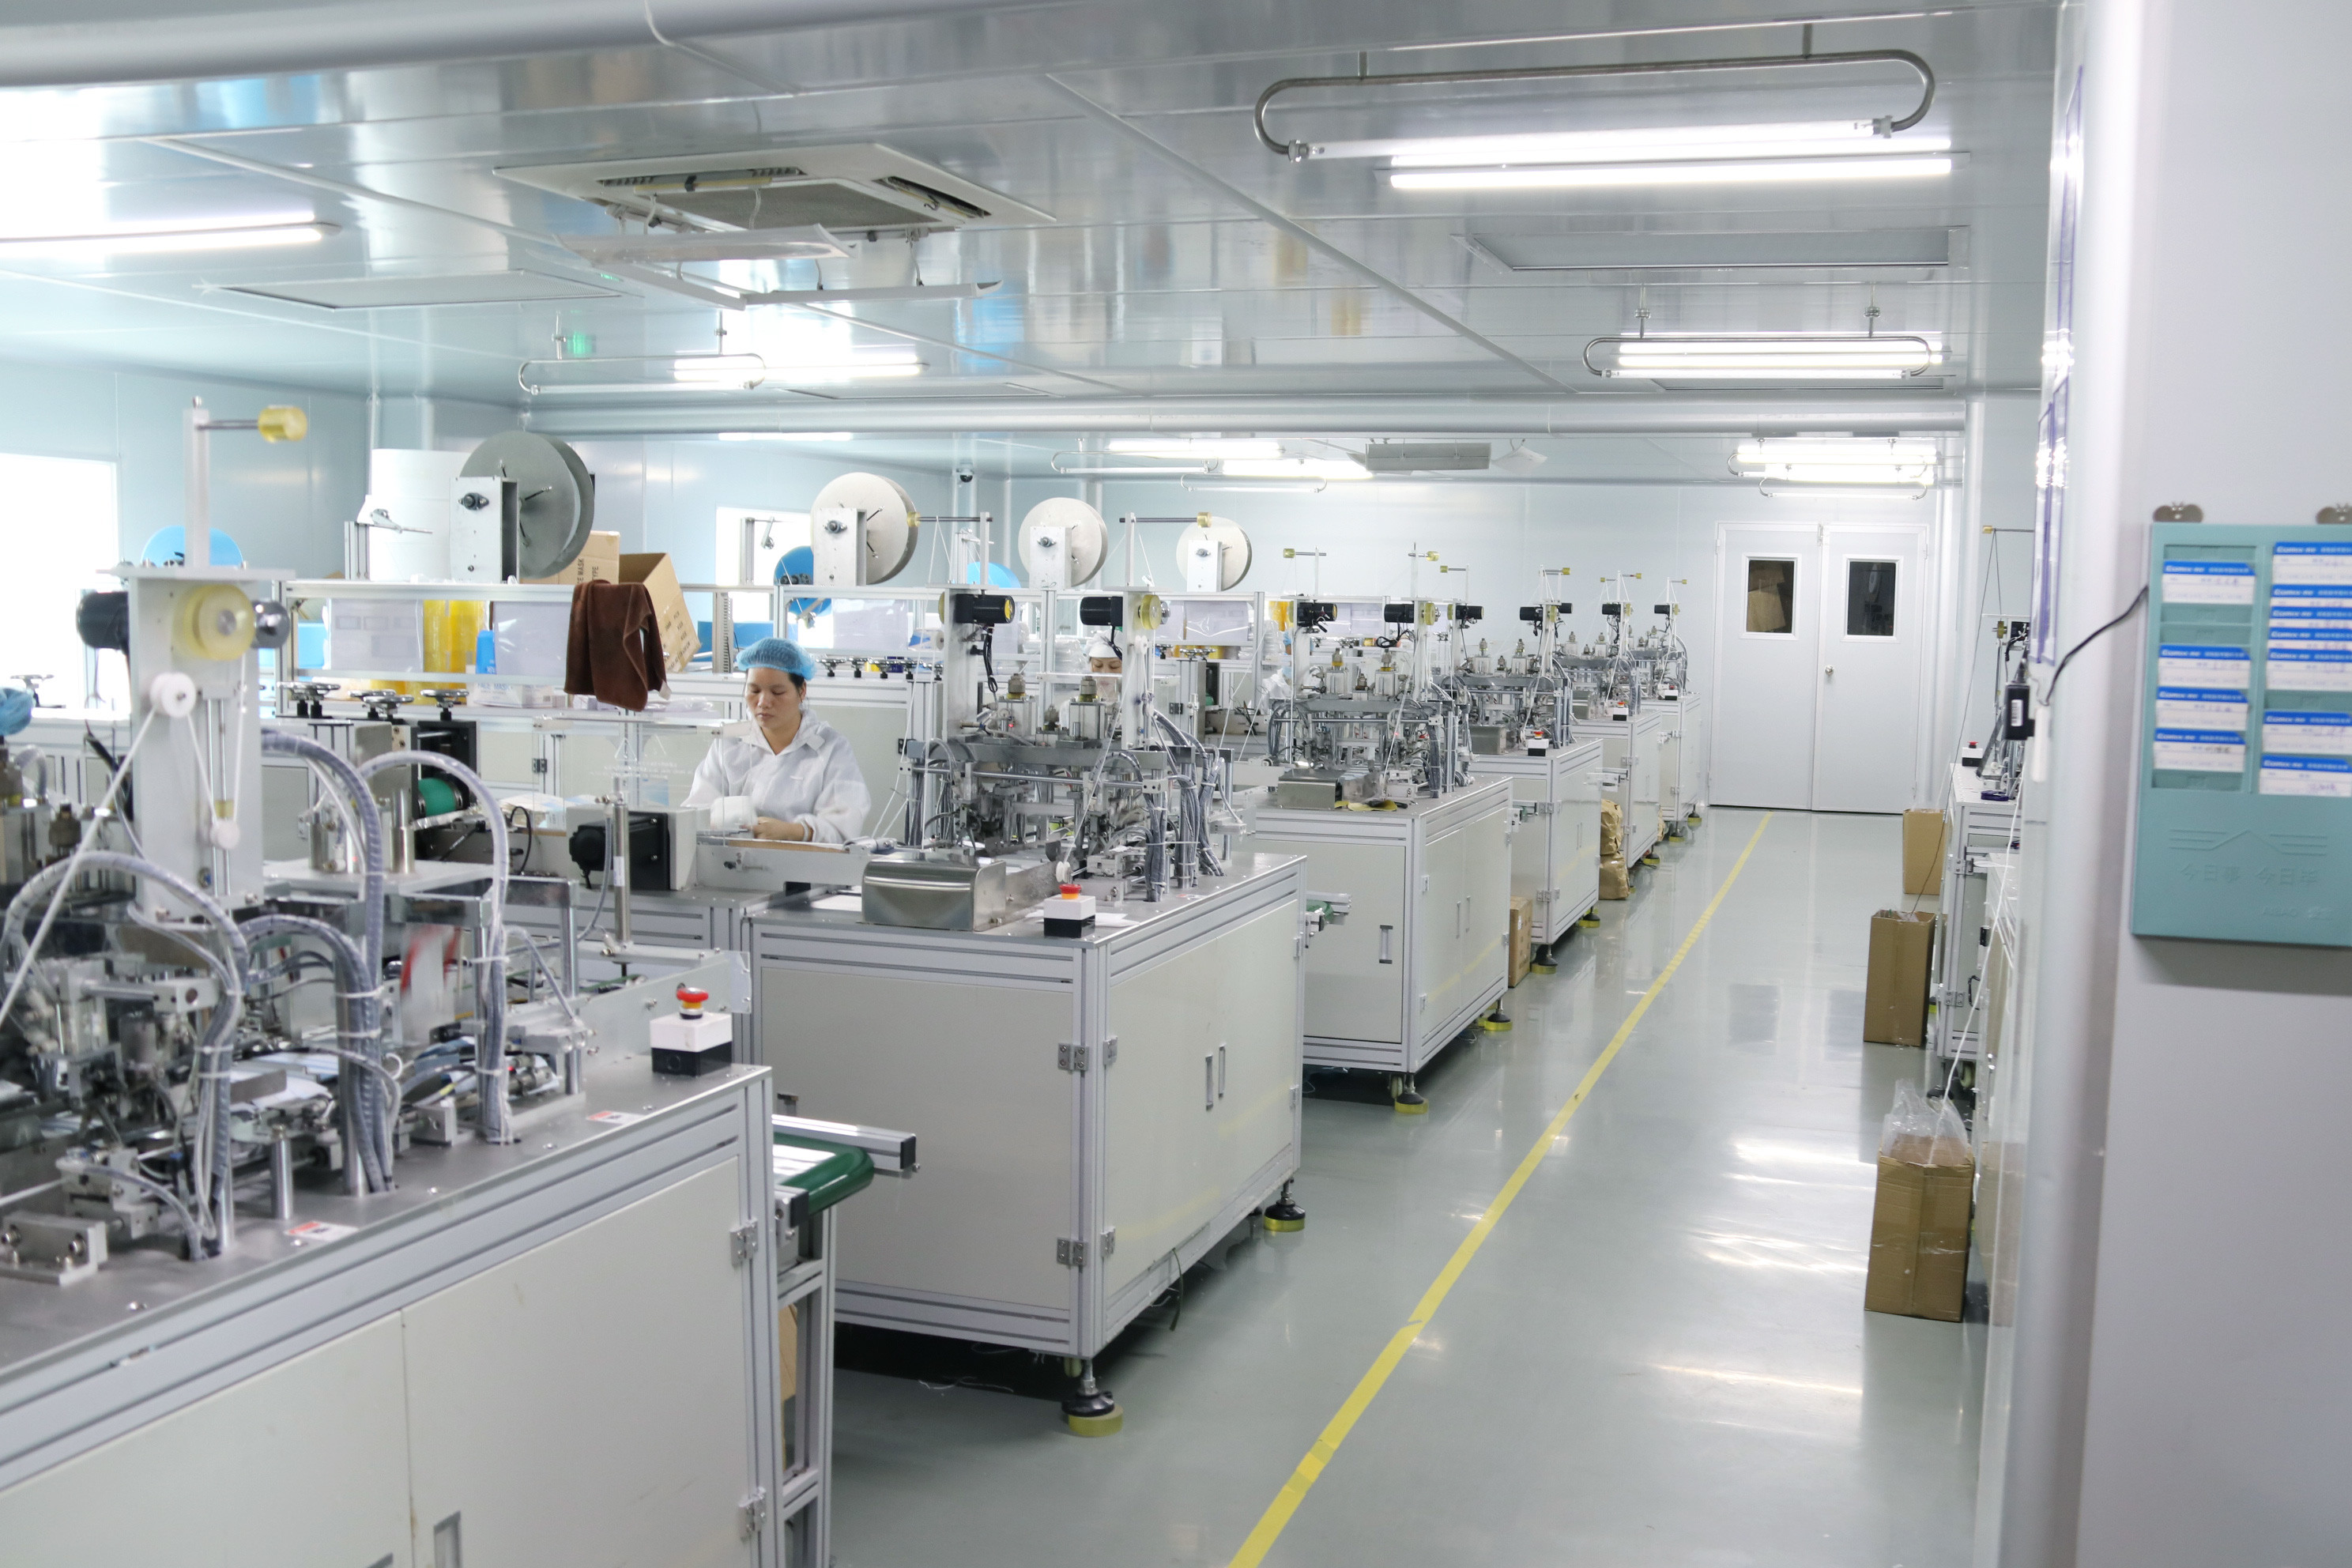 Guangdong Yian Technology Co., Ltd.